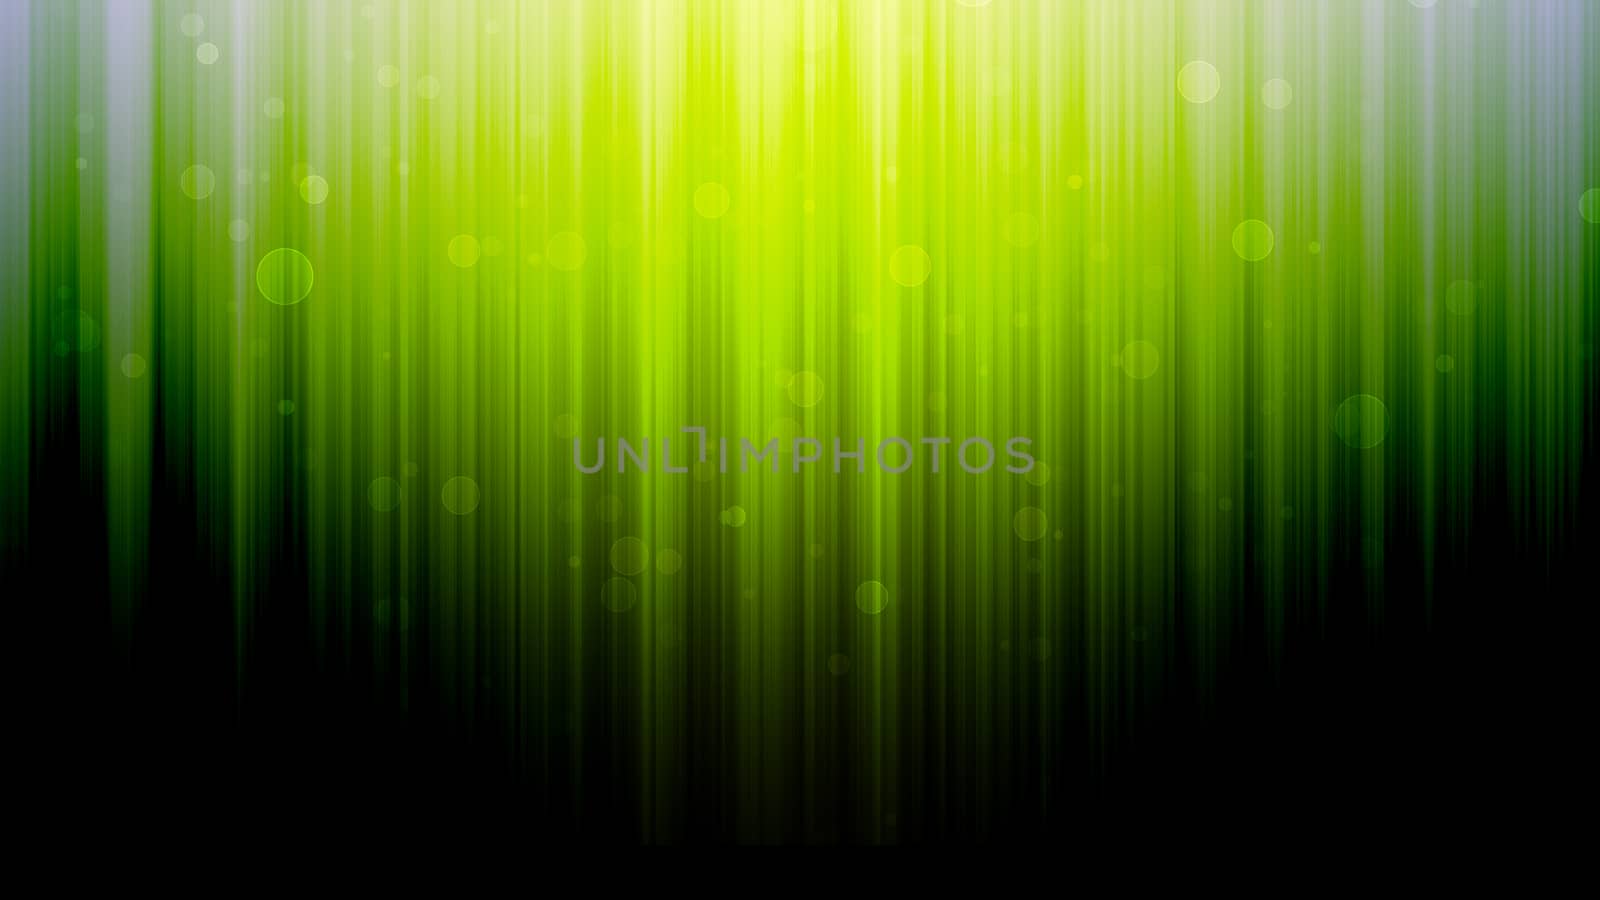 dark abstract spectrum background,Green tone background